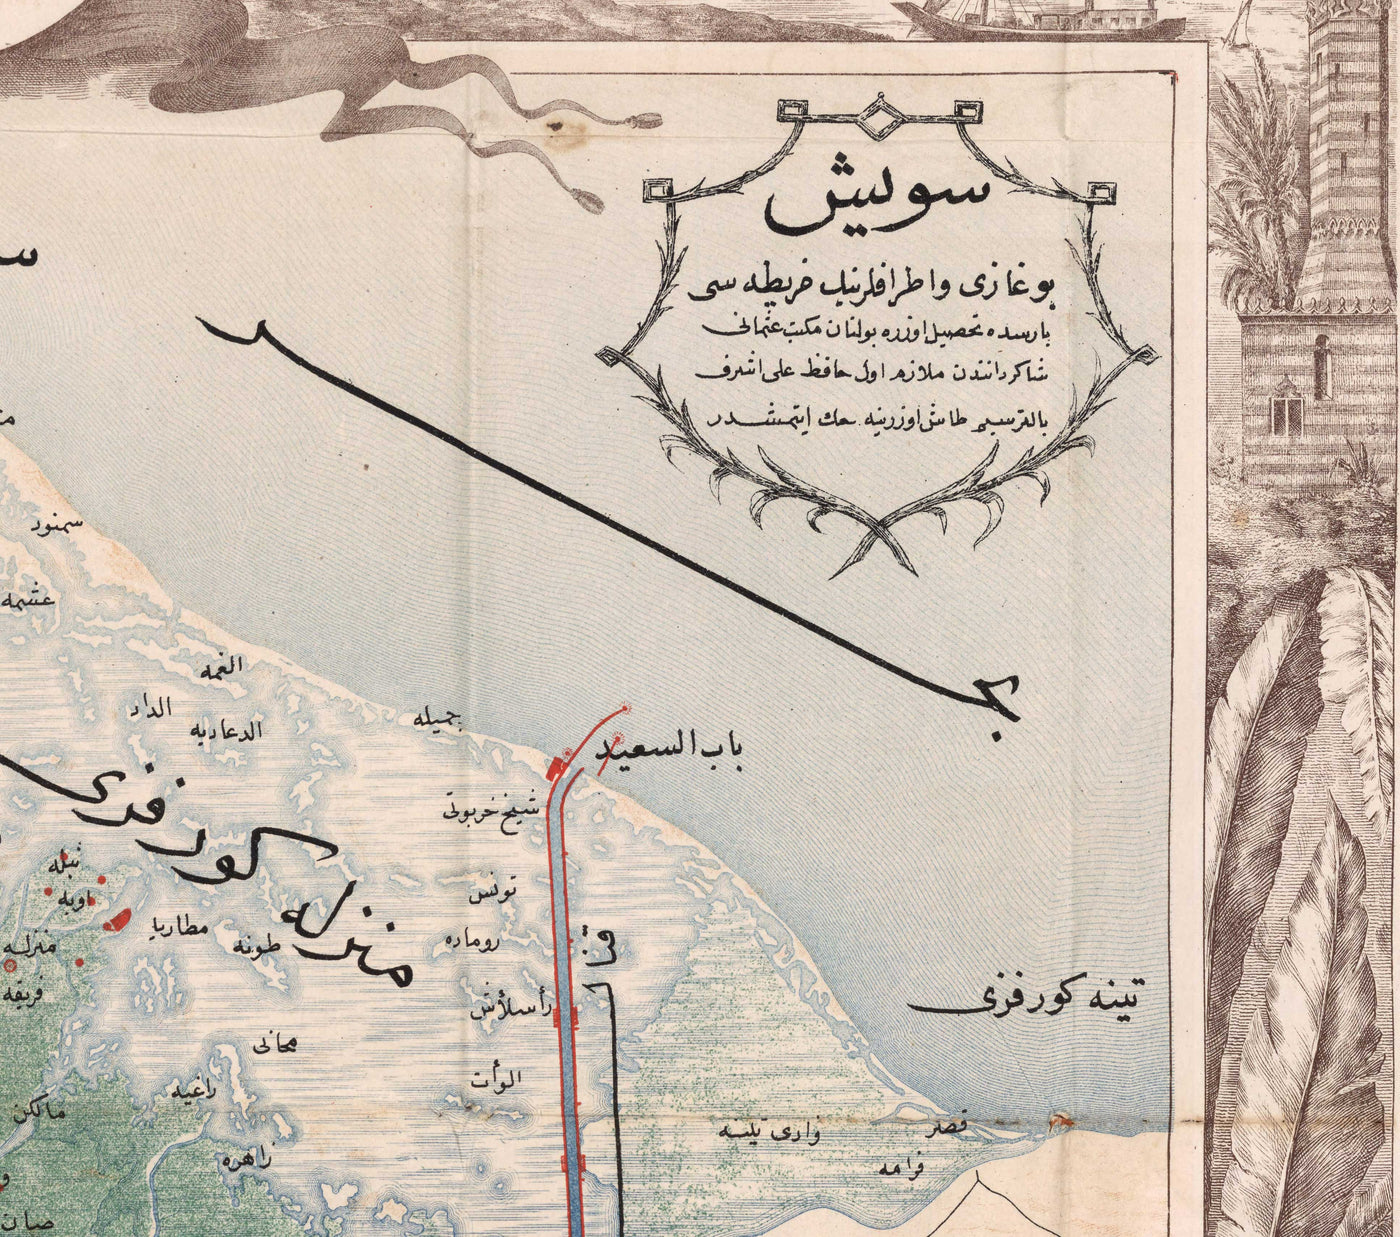 Antiguo mapa árabe del Canal de Suez por Erhard Schieble en 1869 - Río Nilo, El Cairo, Mar Mediterráneo, Mansoura